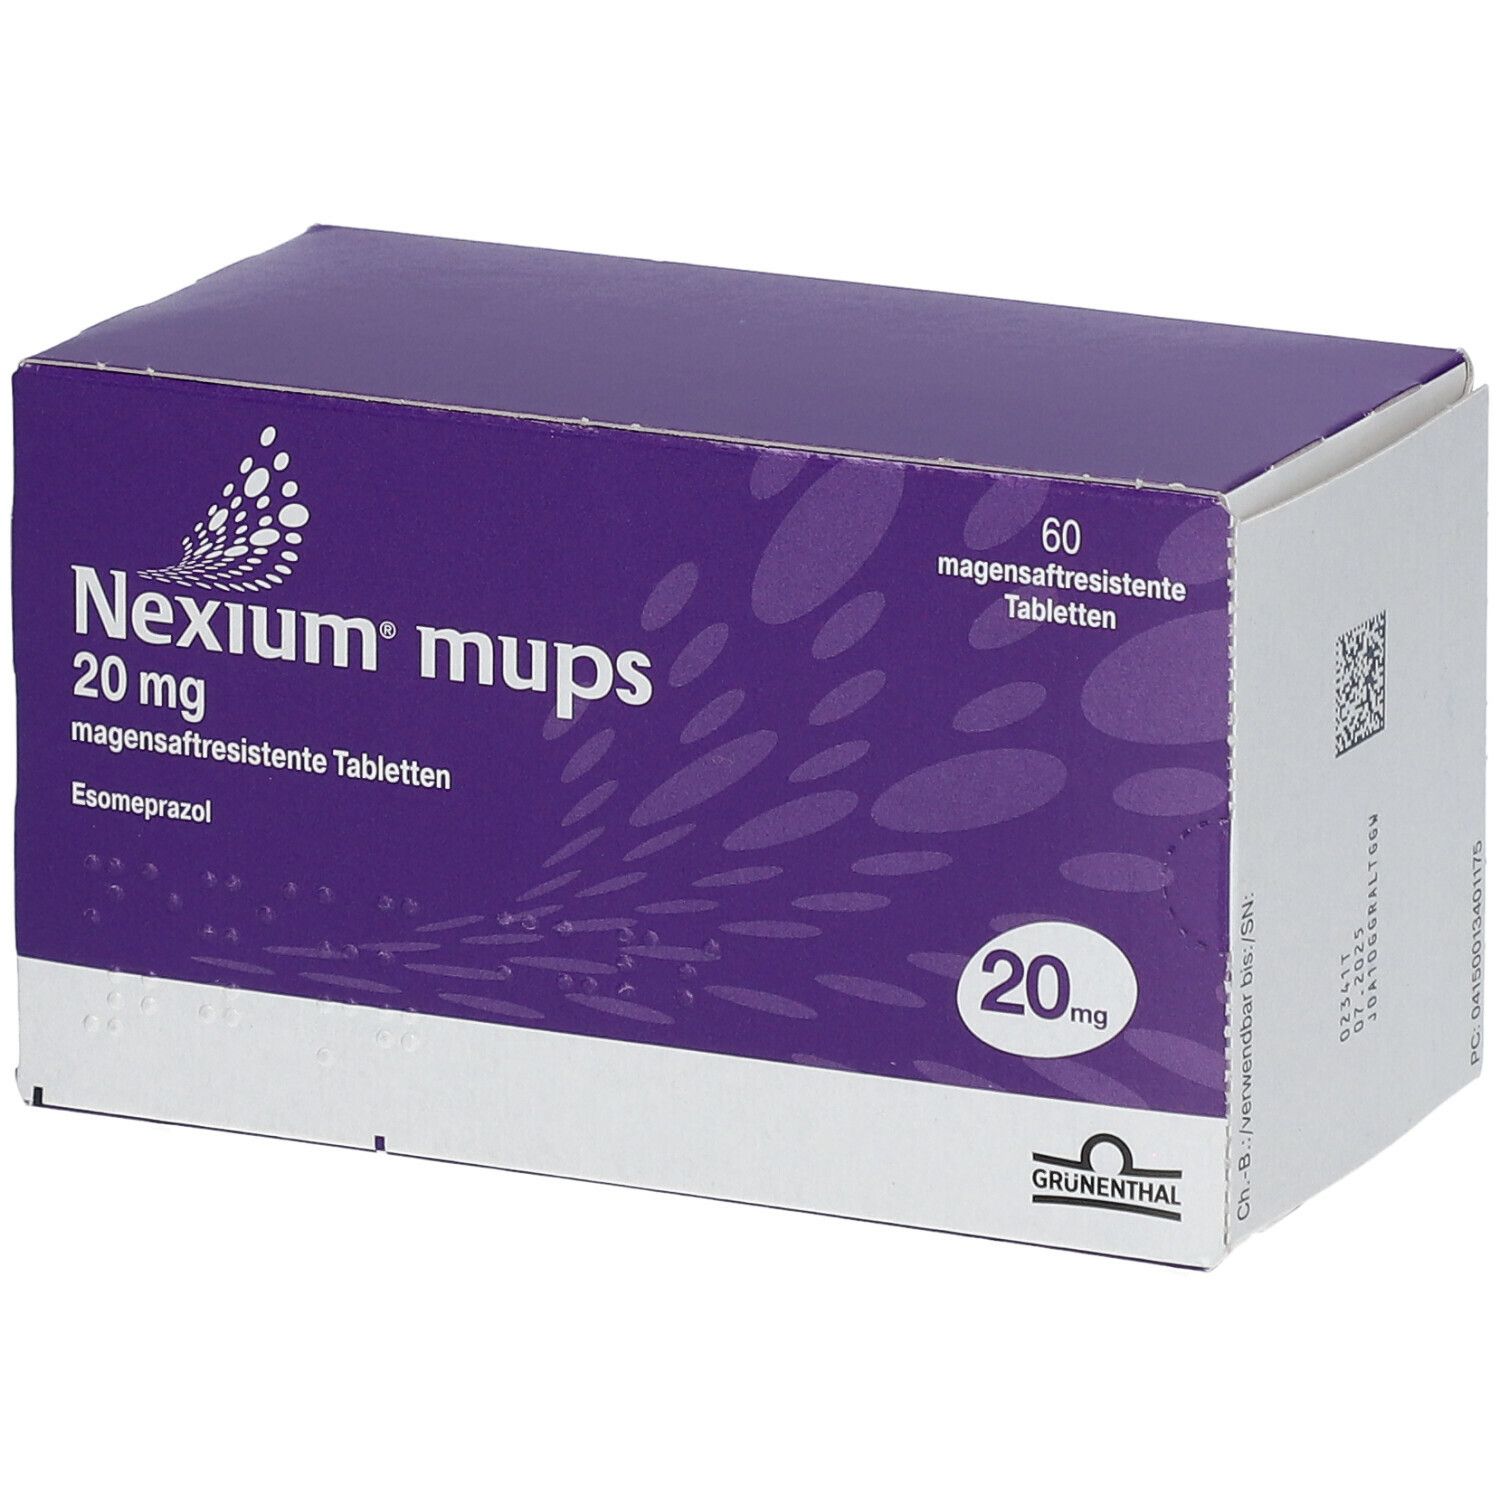 Nexium® mups 20 mg